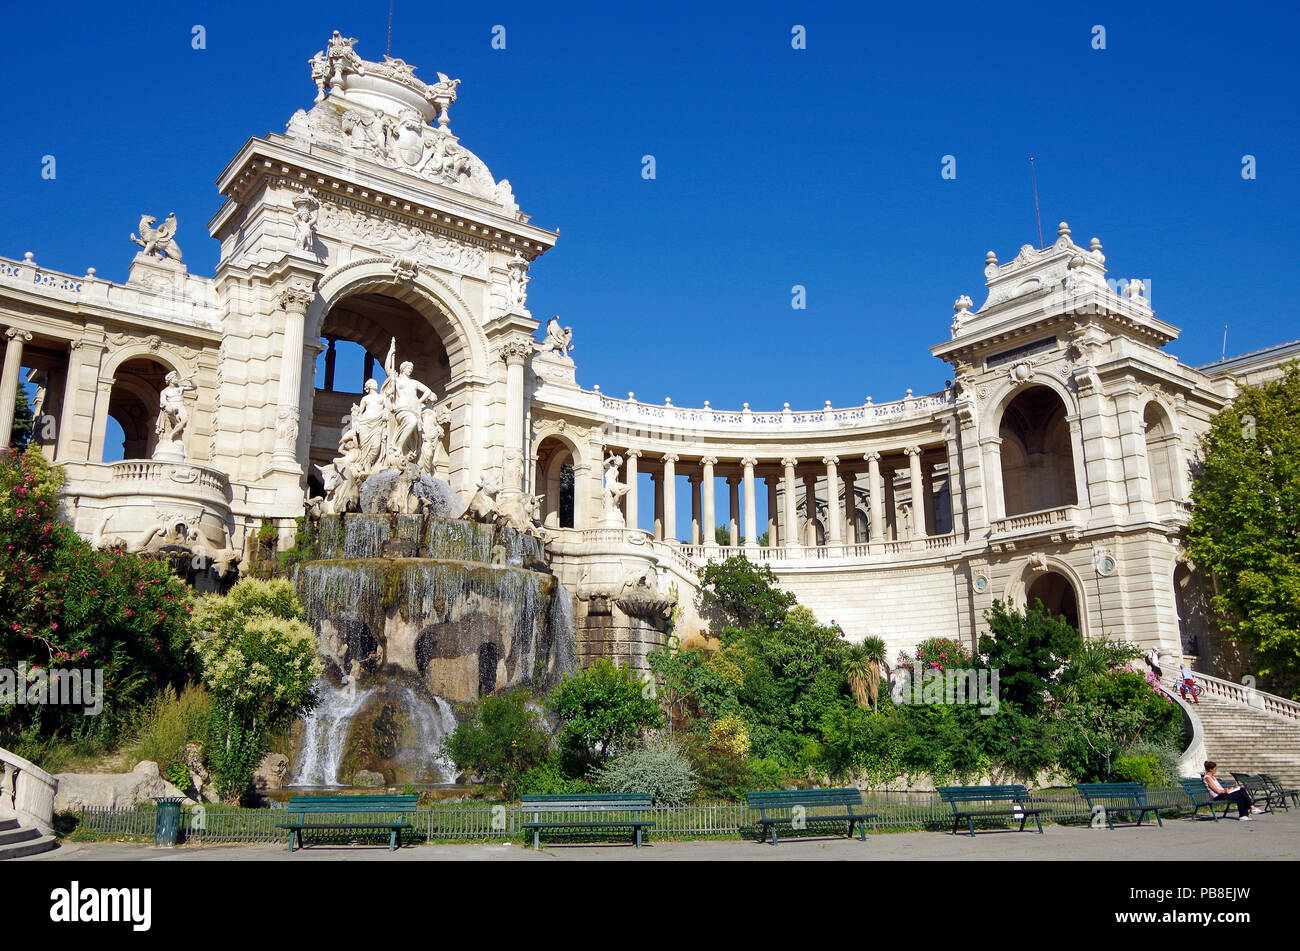 Chateau d'eau & colonnadeof favoloso palazzo Longchamp a Marsiglia, Francia, comprendente 2 musei, castello d'acqua, colonnati, fontane e sculture Foto Stock